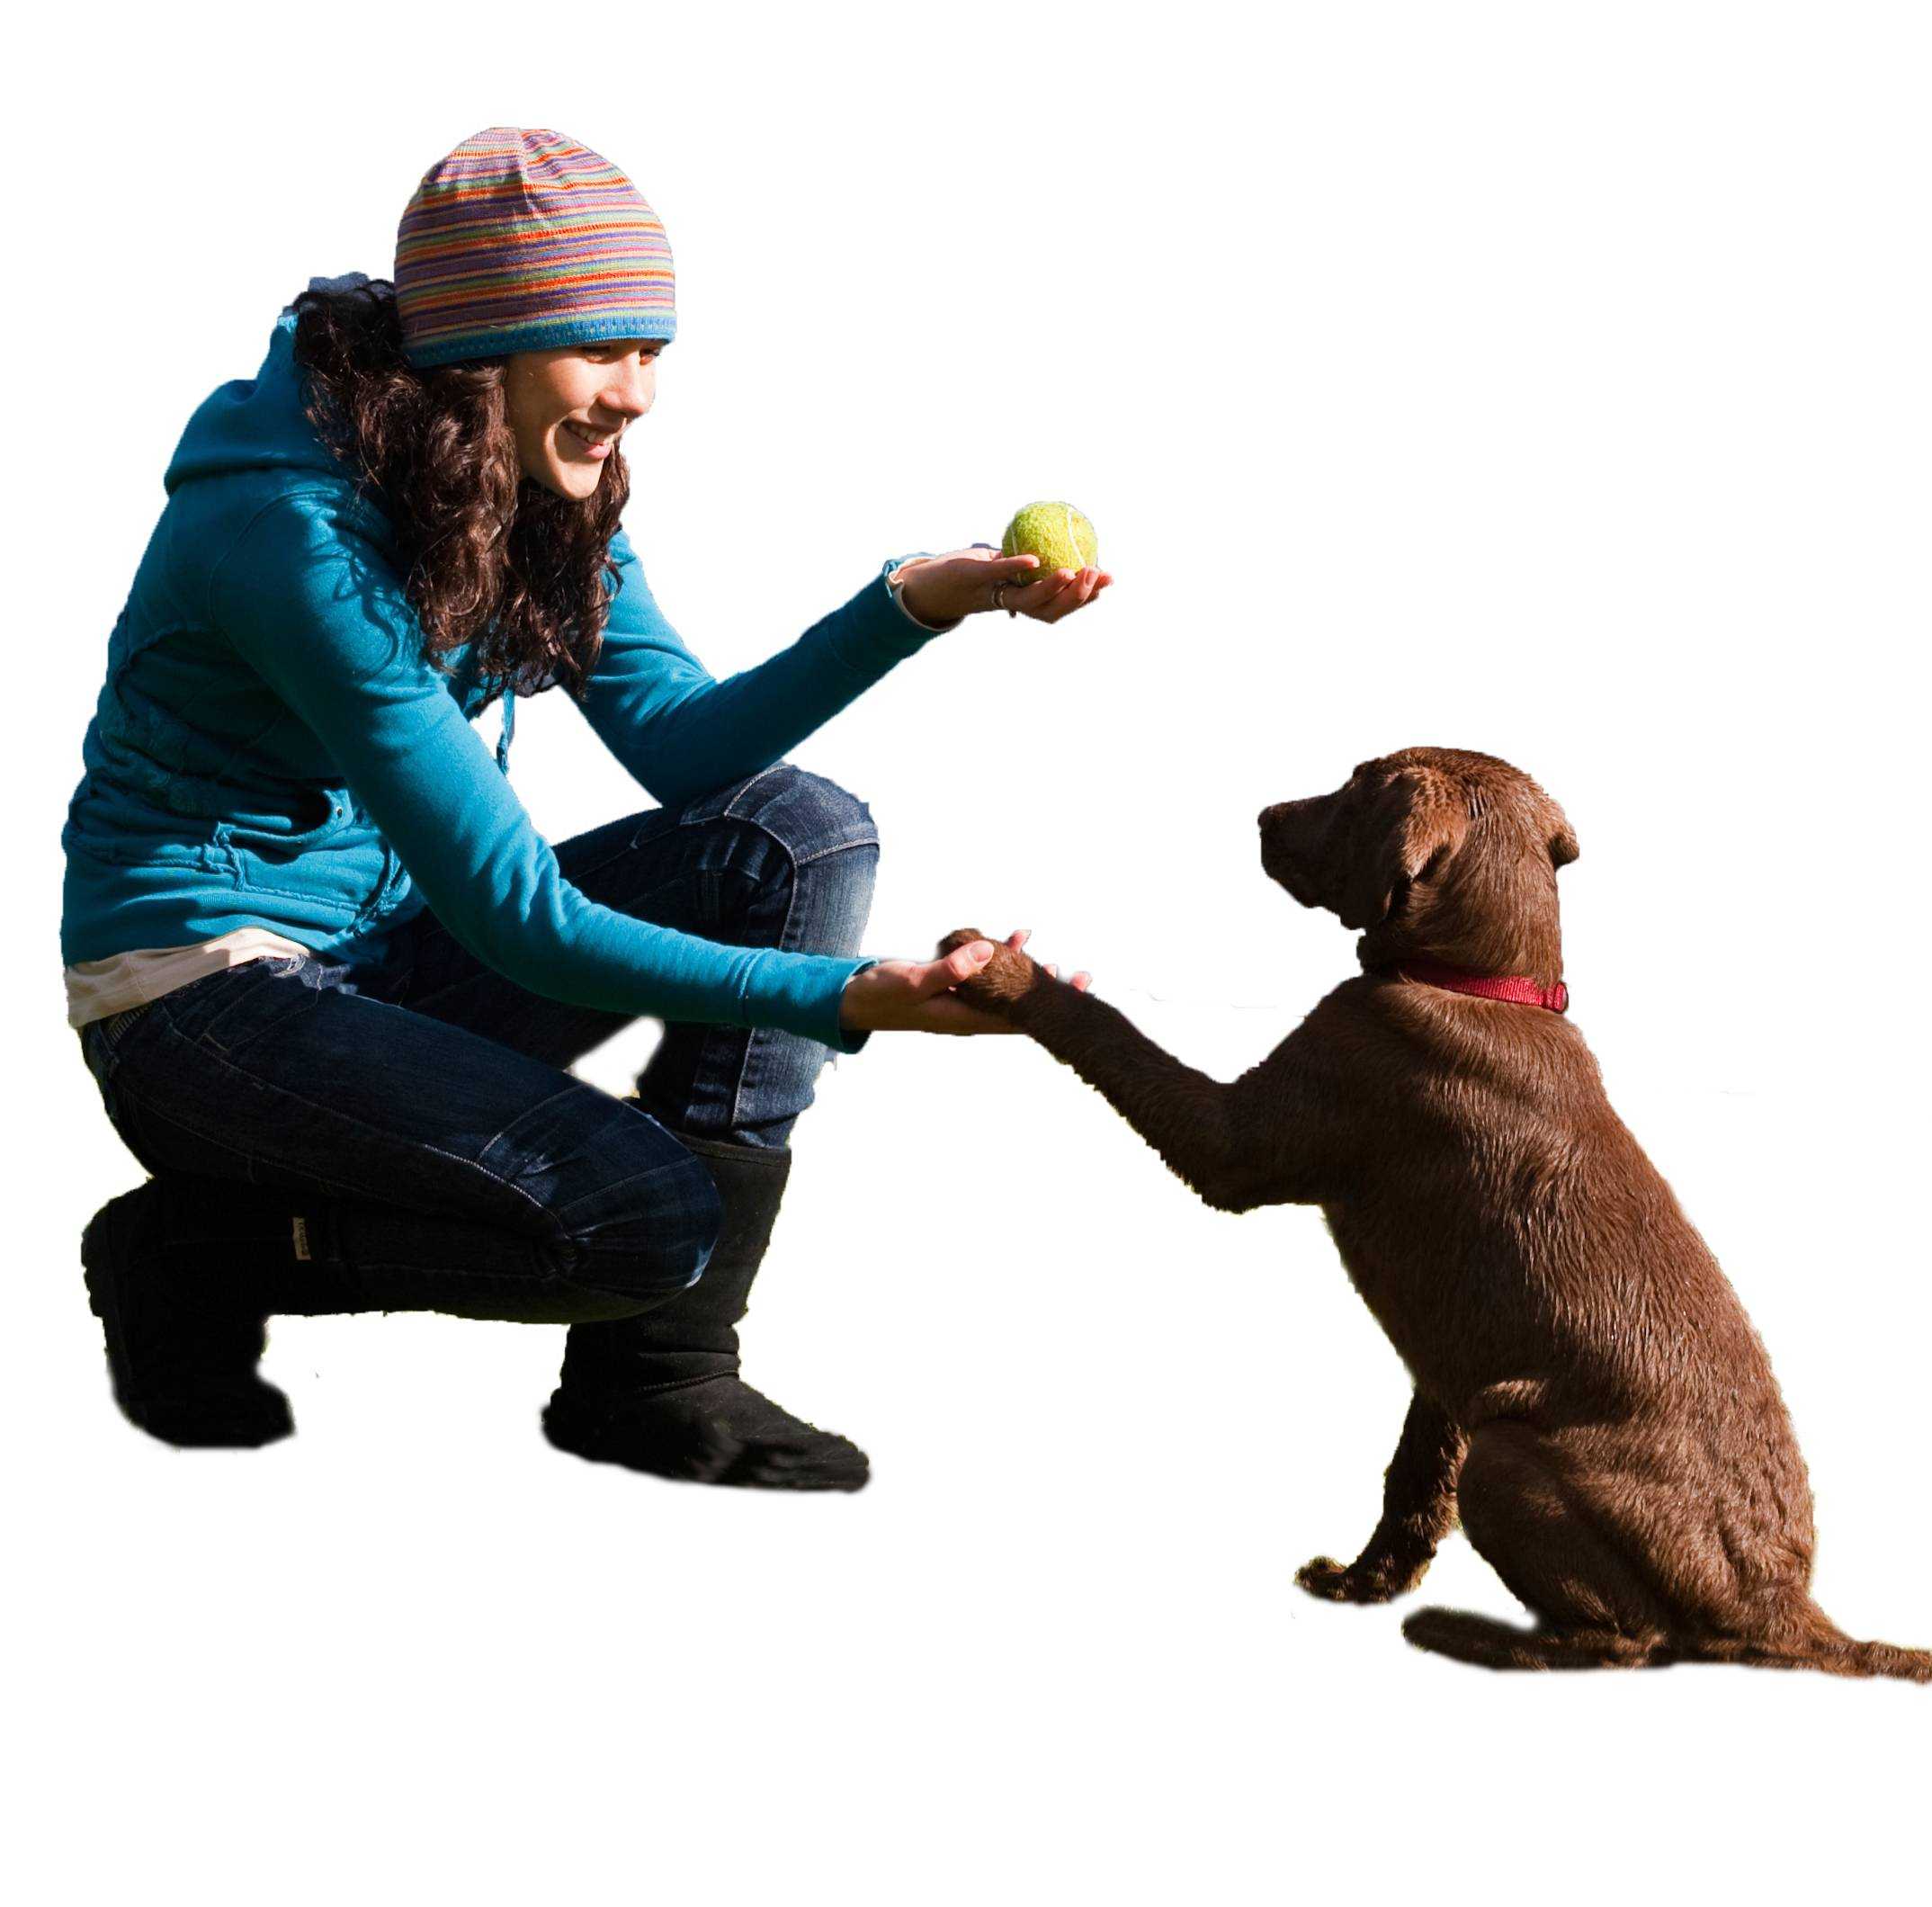 Существует несколько способов как можно предотвратить или исправить прыжки собаки на людей Если у вас щенок, это поведение можно устранить с помощью последовательного обучения